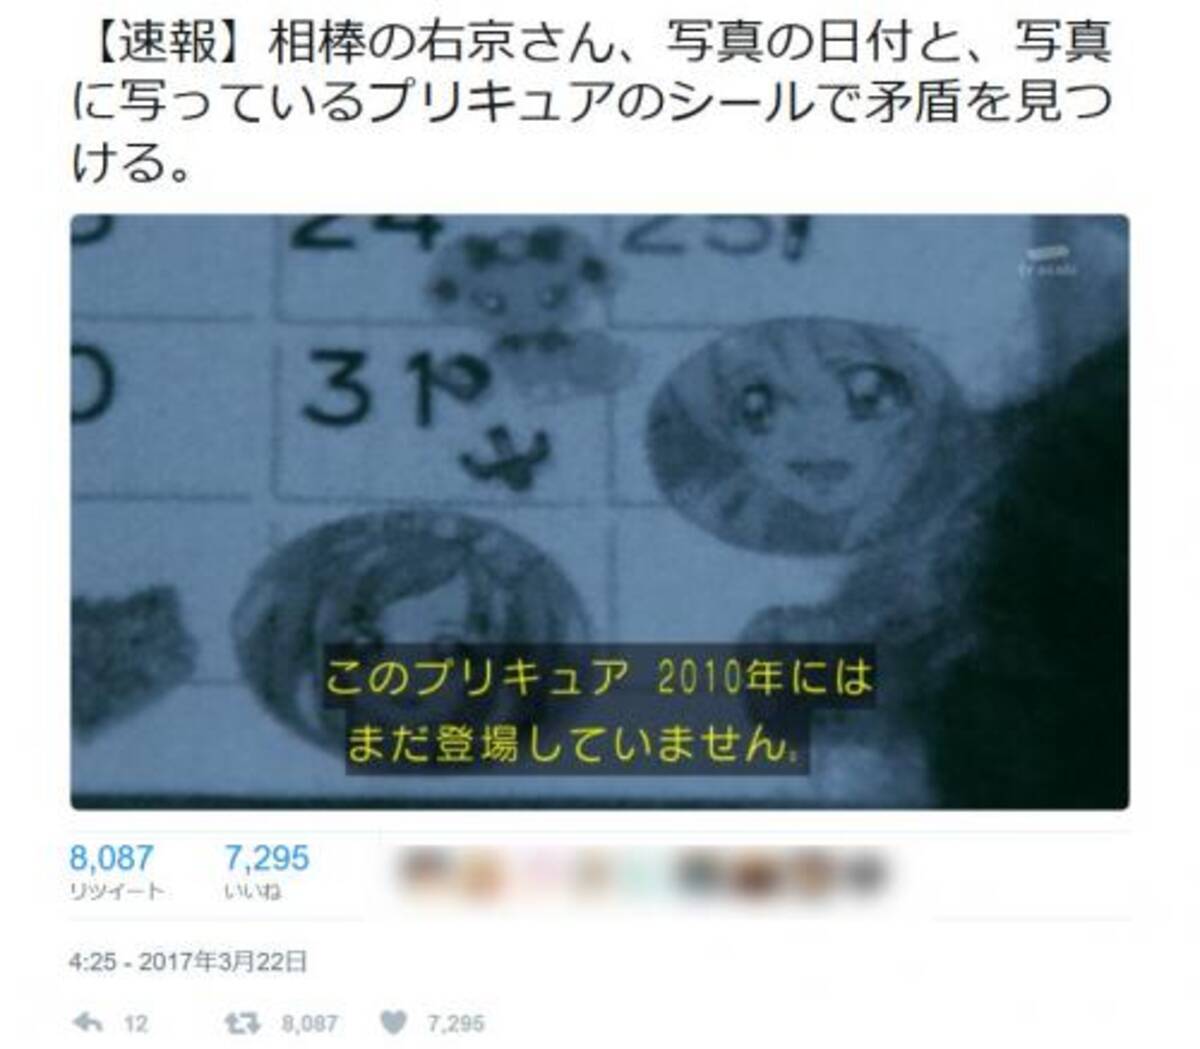 相棒 右京さんが プリキュア シリーズを完全に識別 衝撃の最終回が話題 17年3月23日 エキサイトニュース